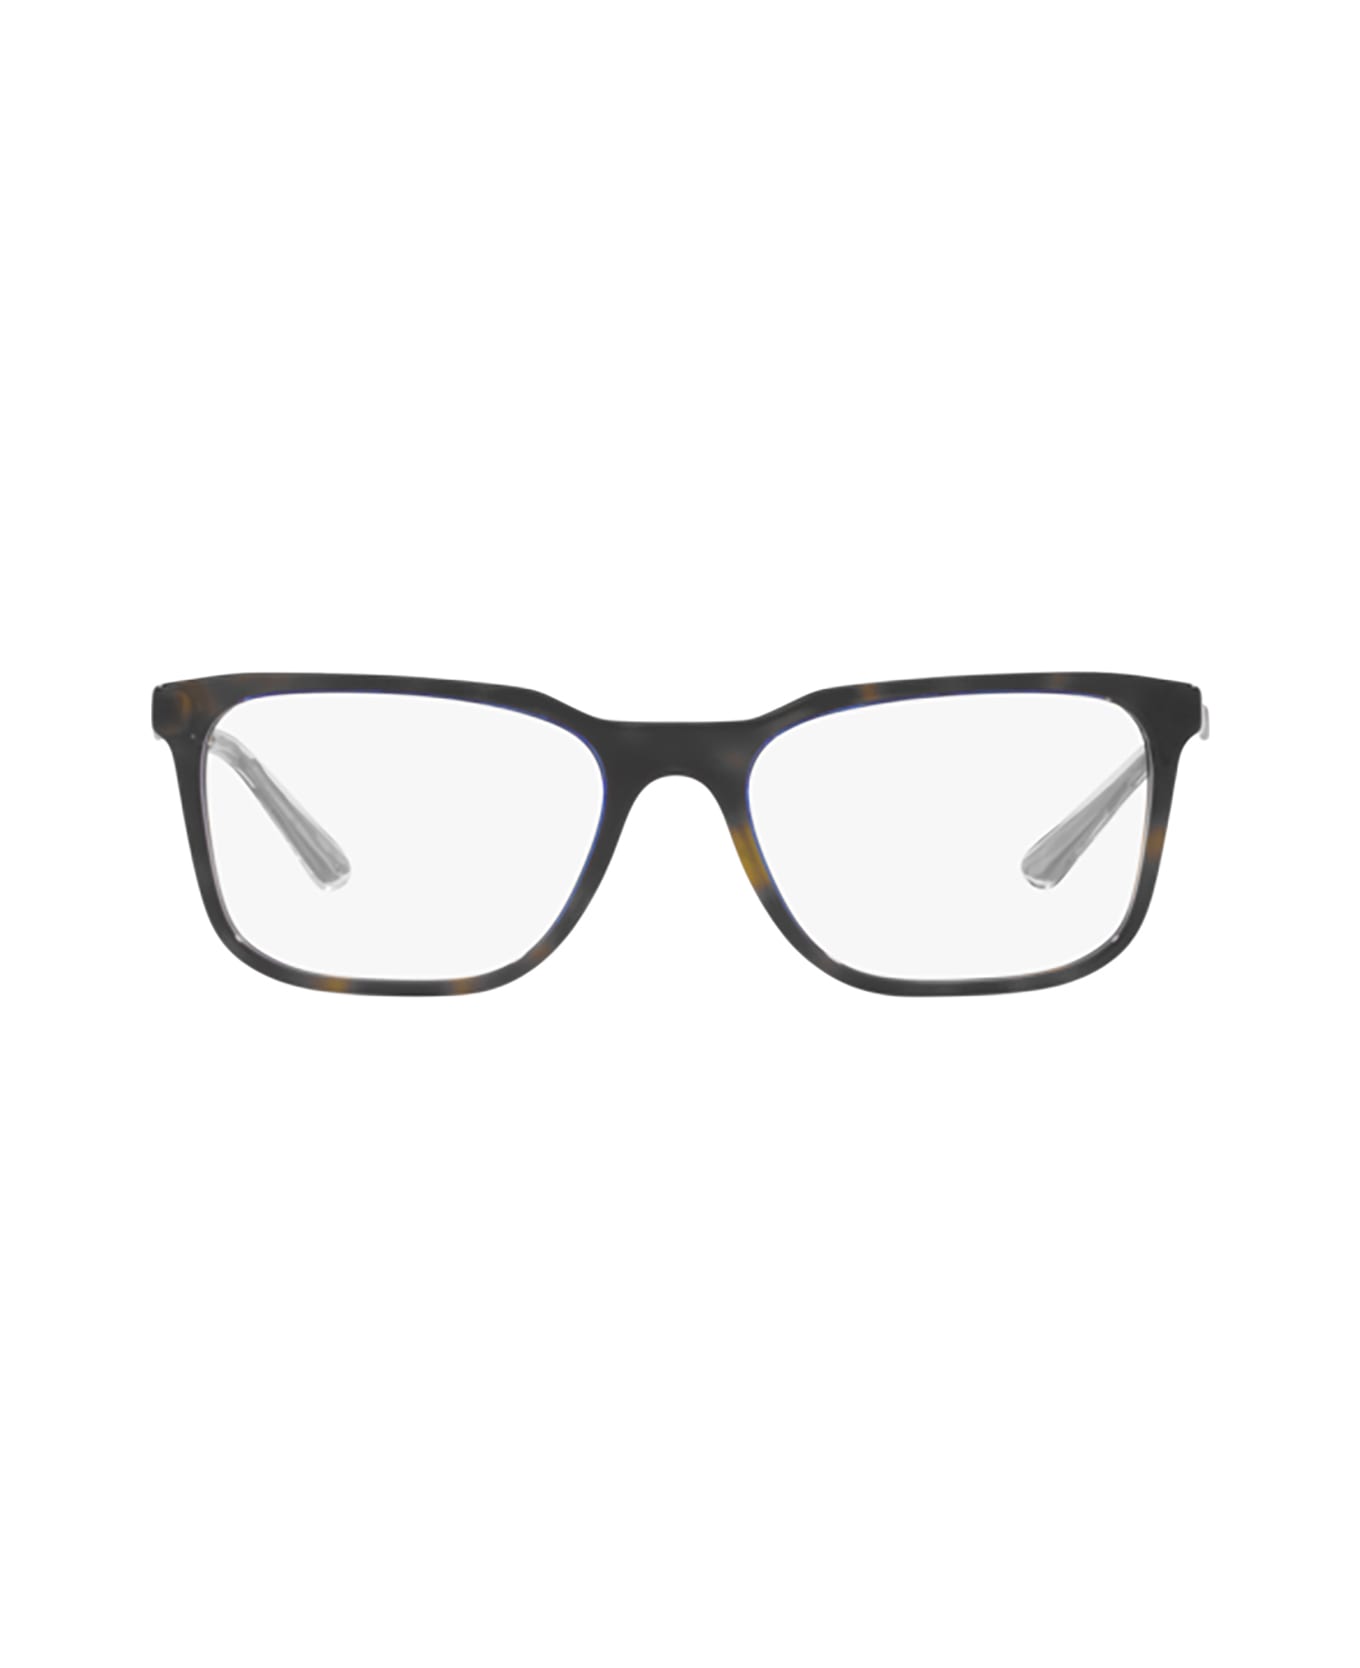 Prada Eyewear Pr 05zv Denim Tortoise Glasses - Denim Tortoise アイウェア